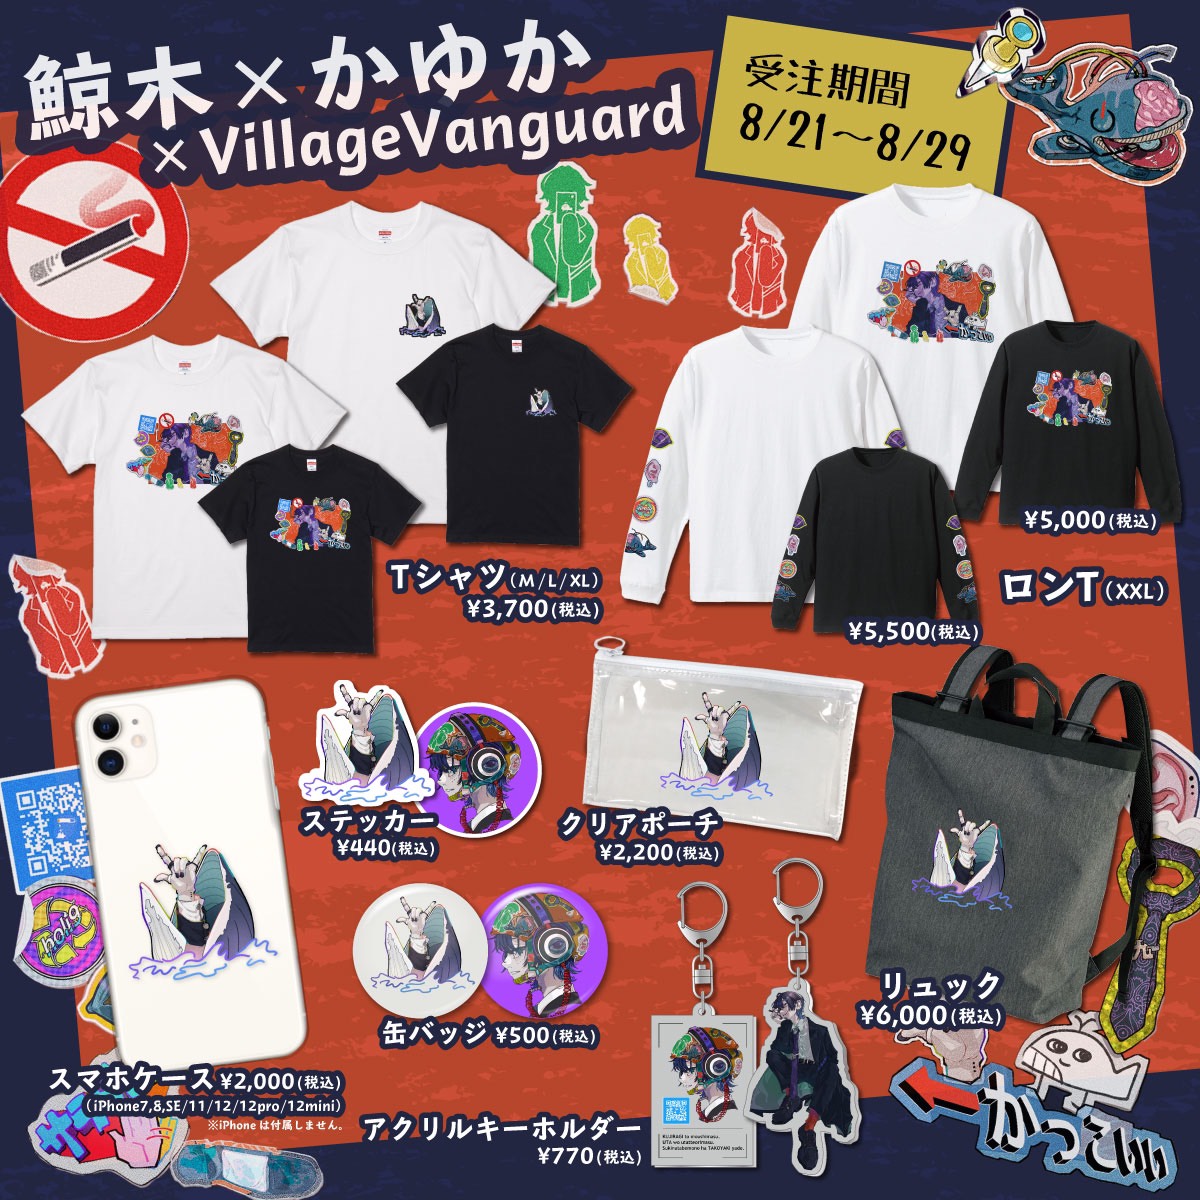 鯨木 Village Vanguard イラストレーター かゆか を迎え限定グッズ販売決定 ヴィレッジヴァンガードのプレスリリース